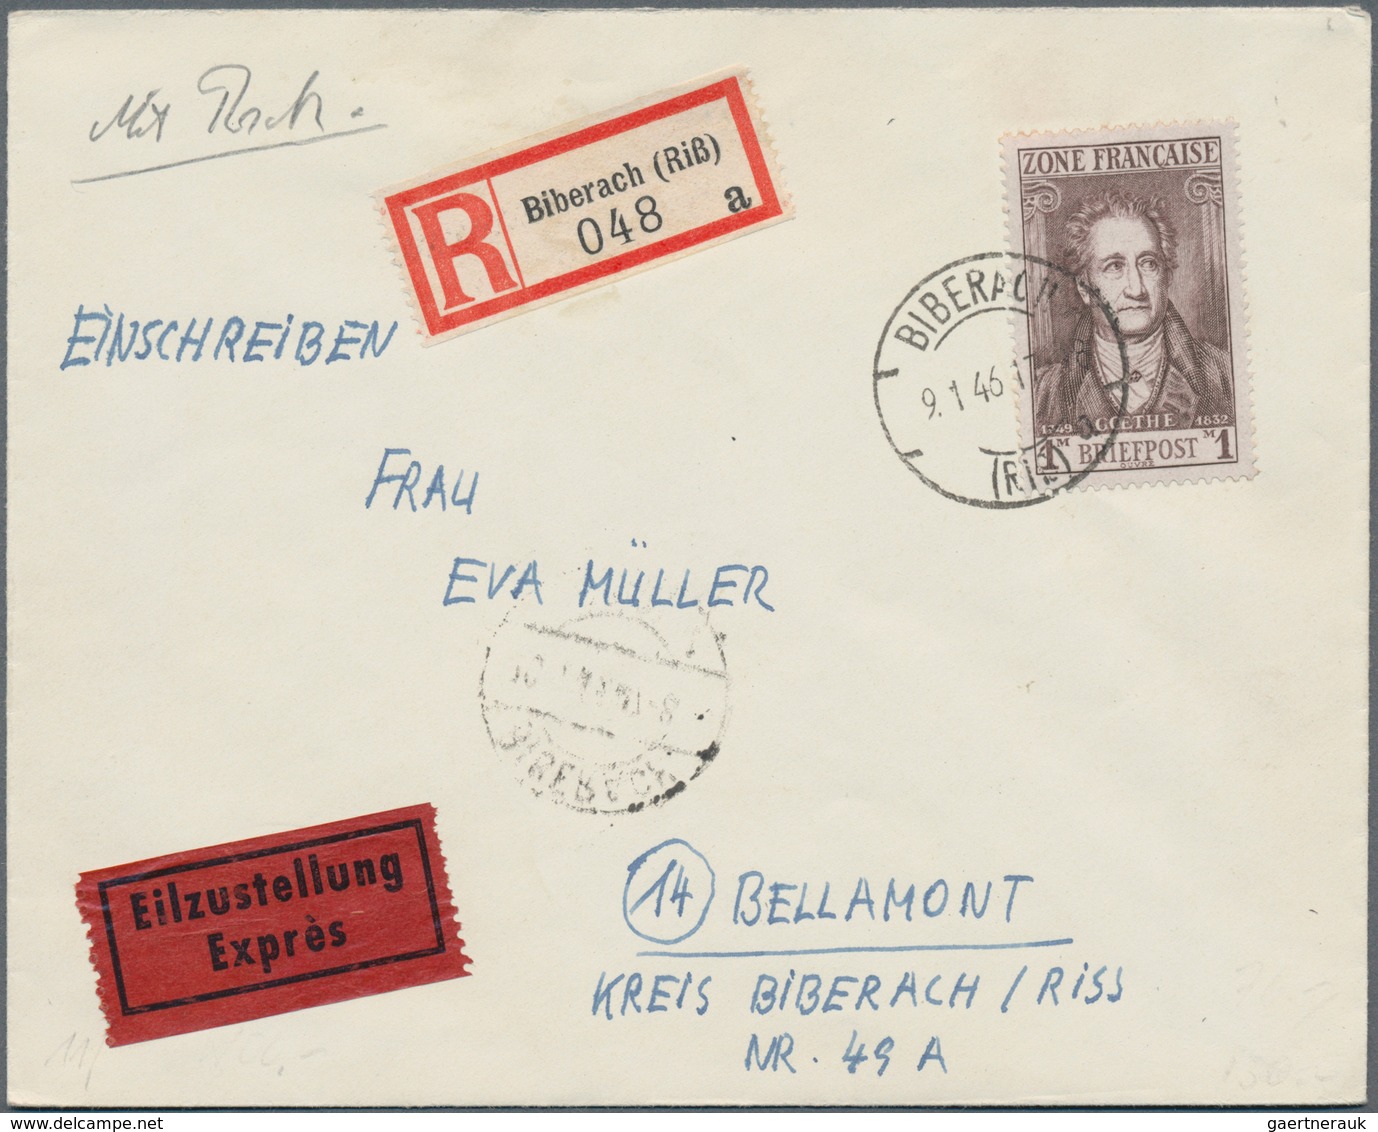 Französische Zone: 1946/1949, Partie von ca. 540 Briefen und Karten, meist Bedarfspost der verschied